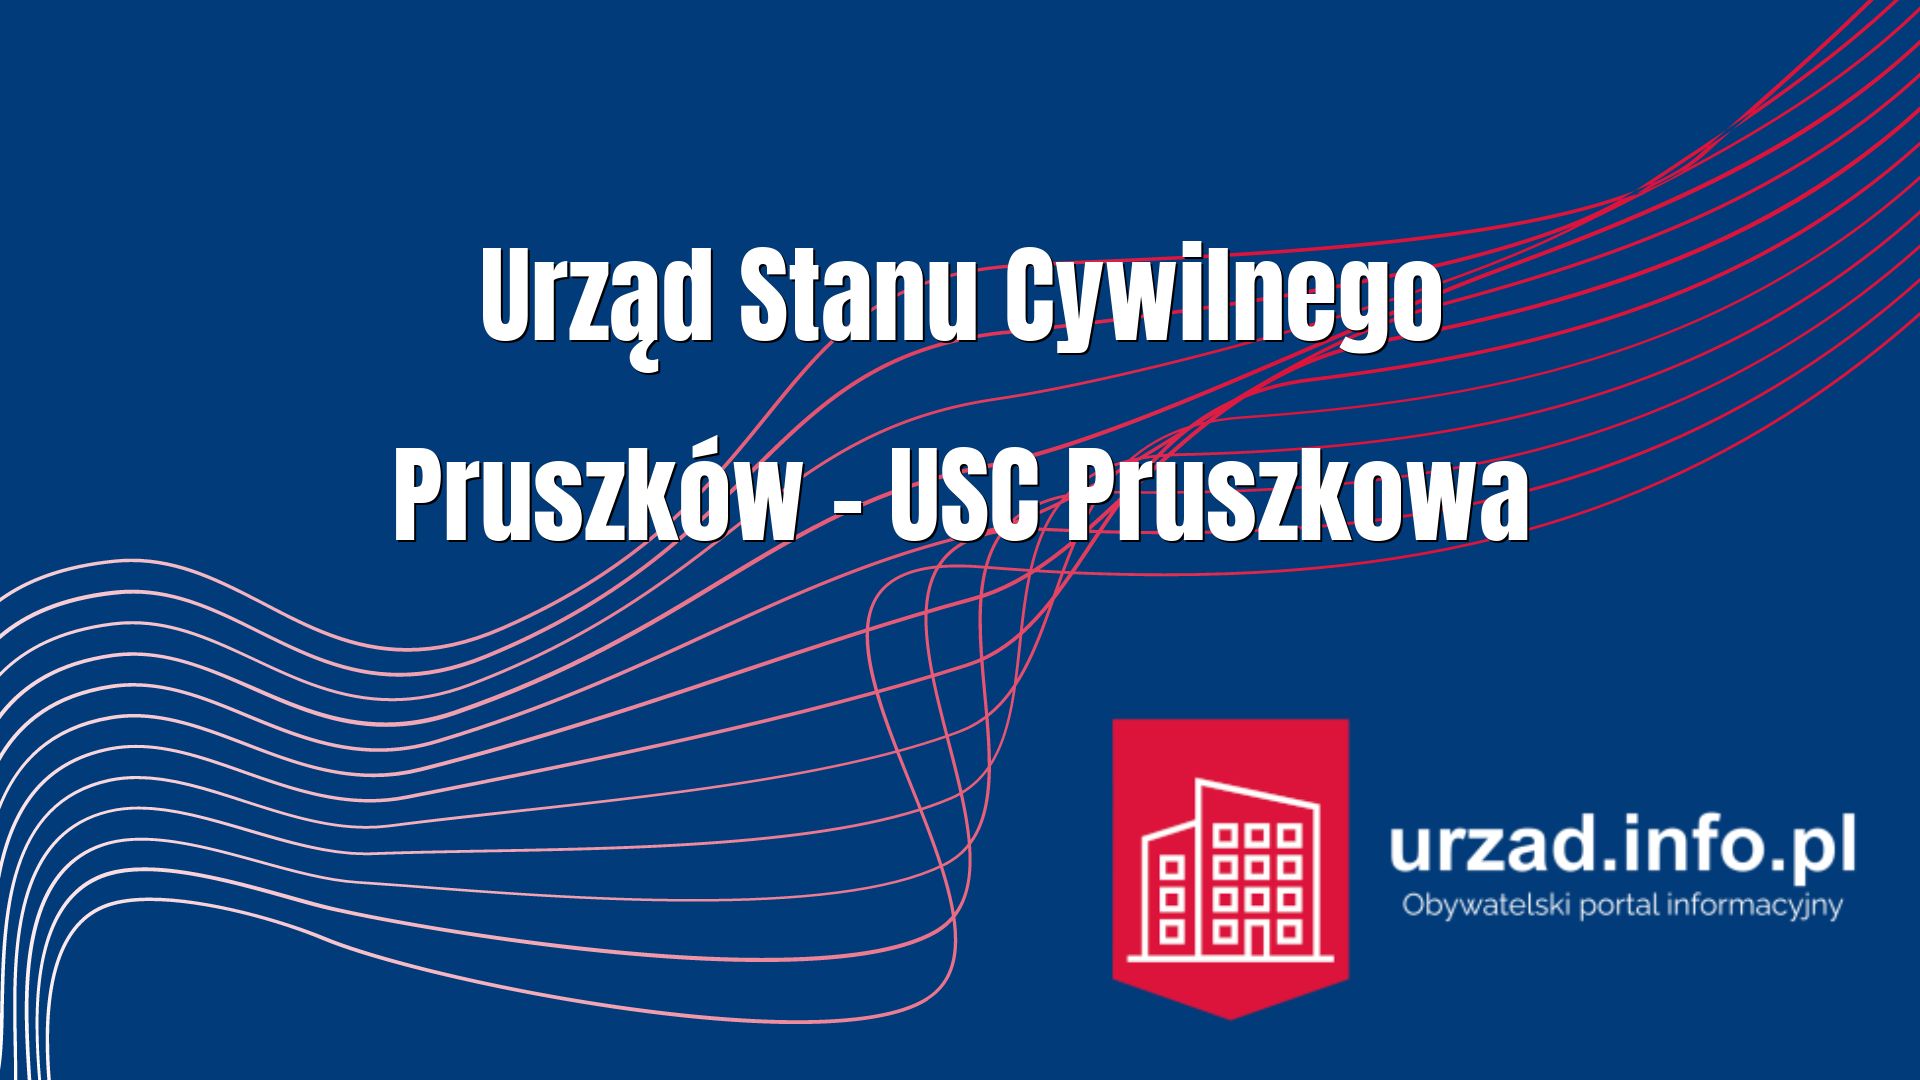 Urząd Stanu Cywilnego Pruszków – USC Pruszkowa